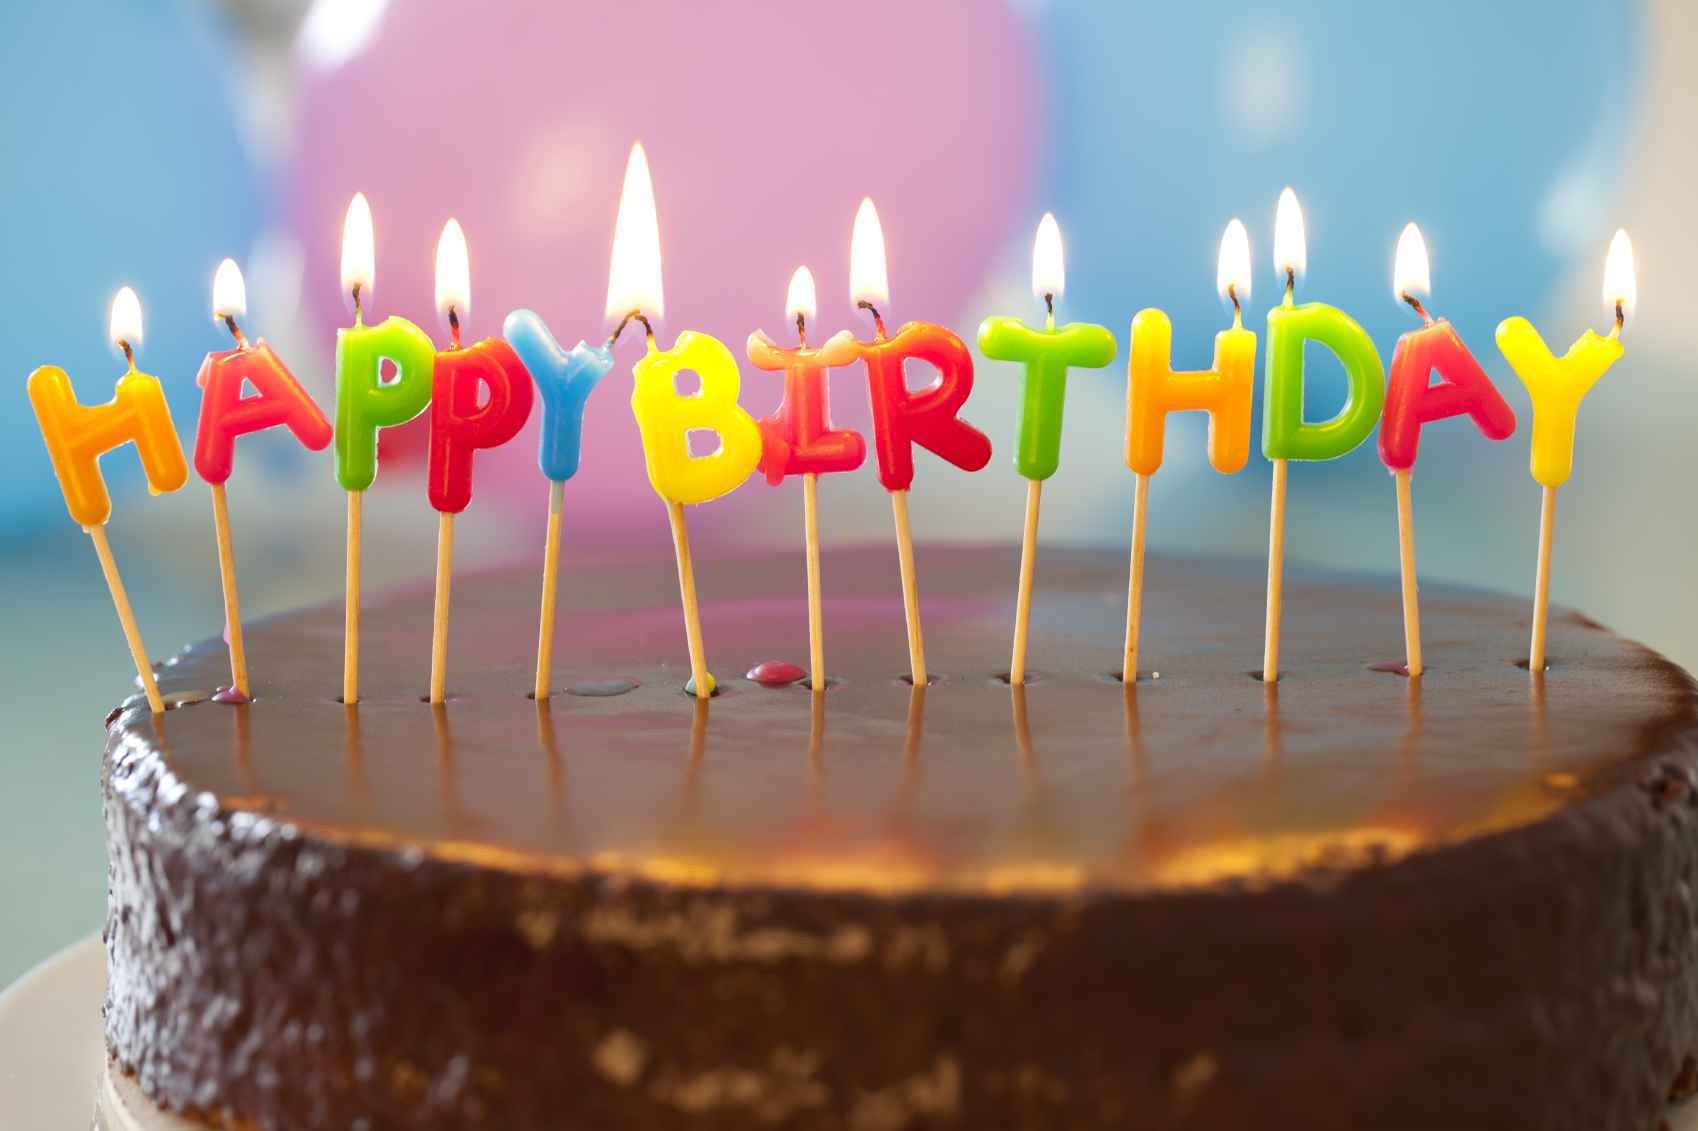 Слушать все песни подряд с днем рождения. С днем рождения. Тортик с днем рождения. Открытка с днём рождения торт. Поздравления с днём рождения торт.